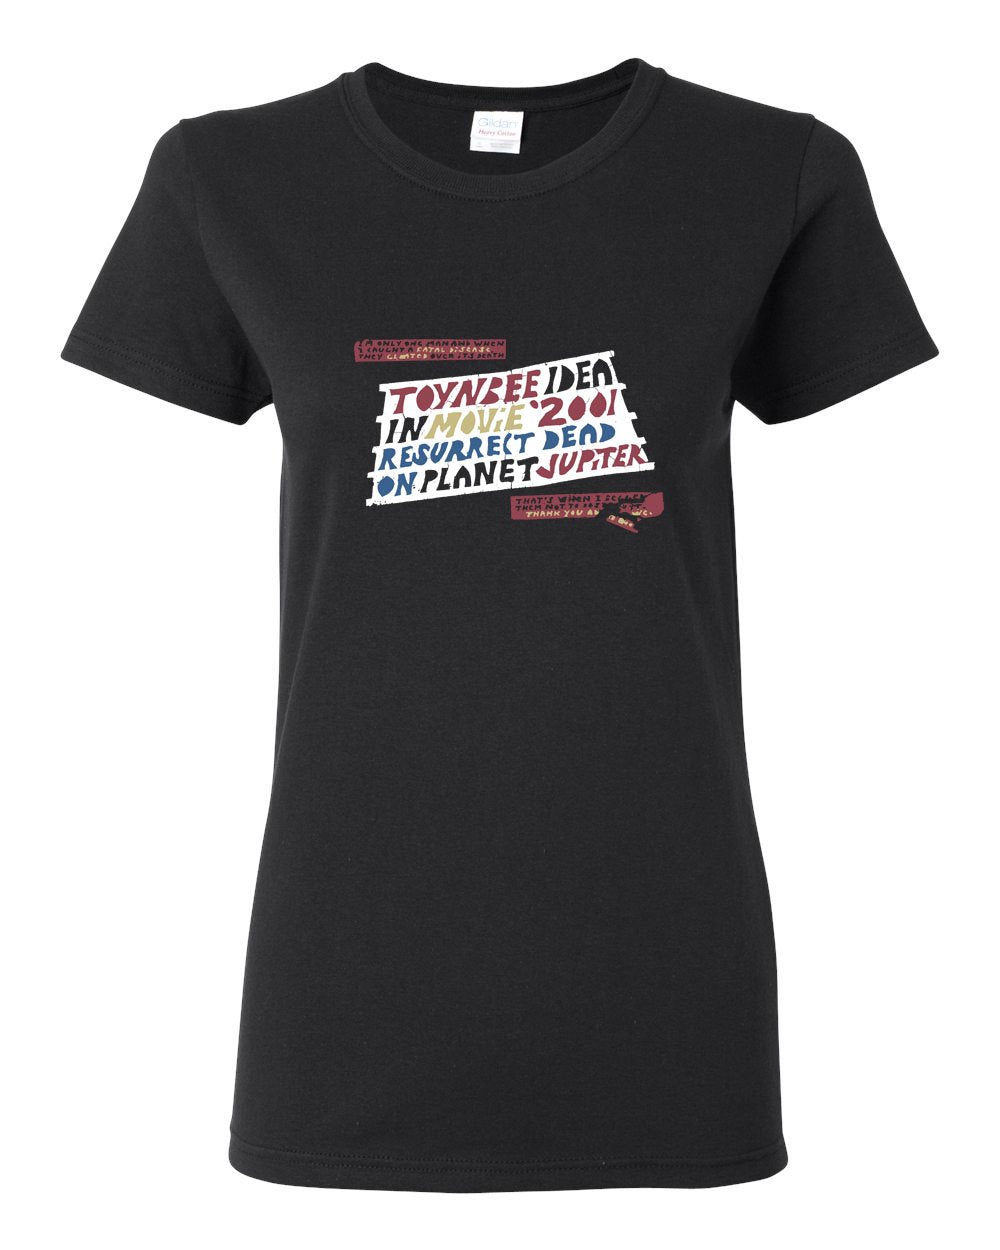 Toynbee LADIES Missy-Fit T-Shirt